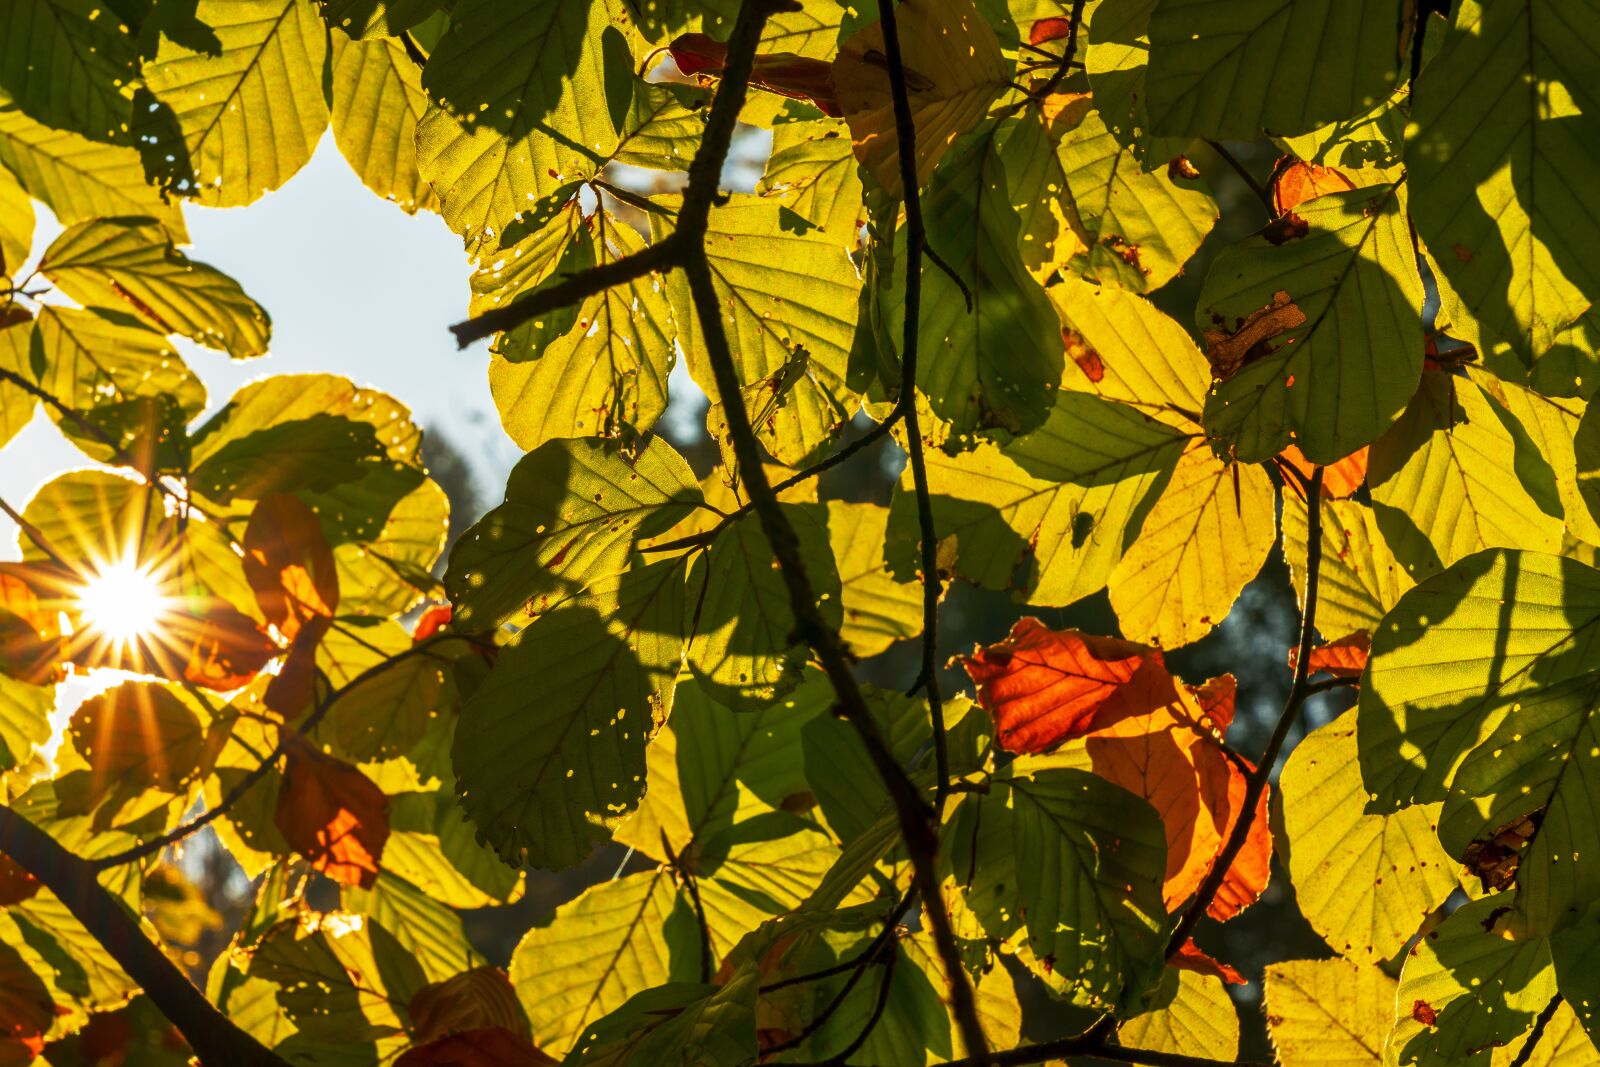 Sony a7 III sample photo. Autumn, leaves, sun photography